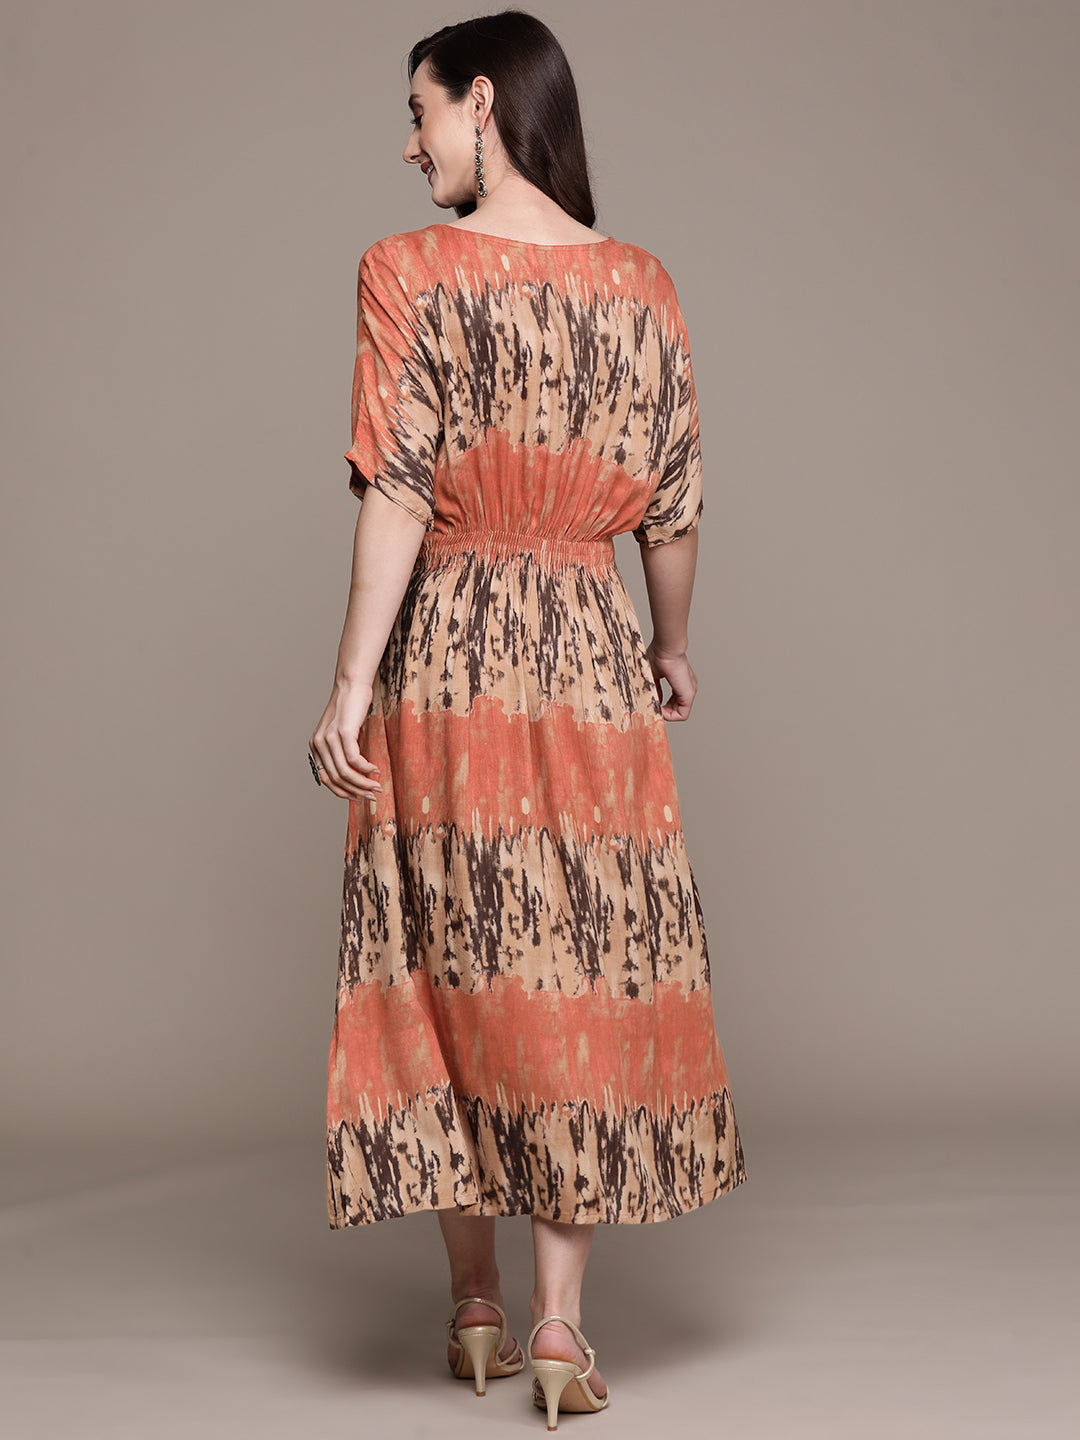 Ishin Women's Multicolored Empire Dress